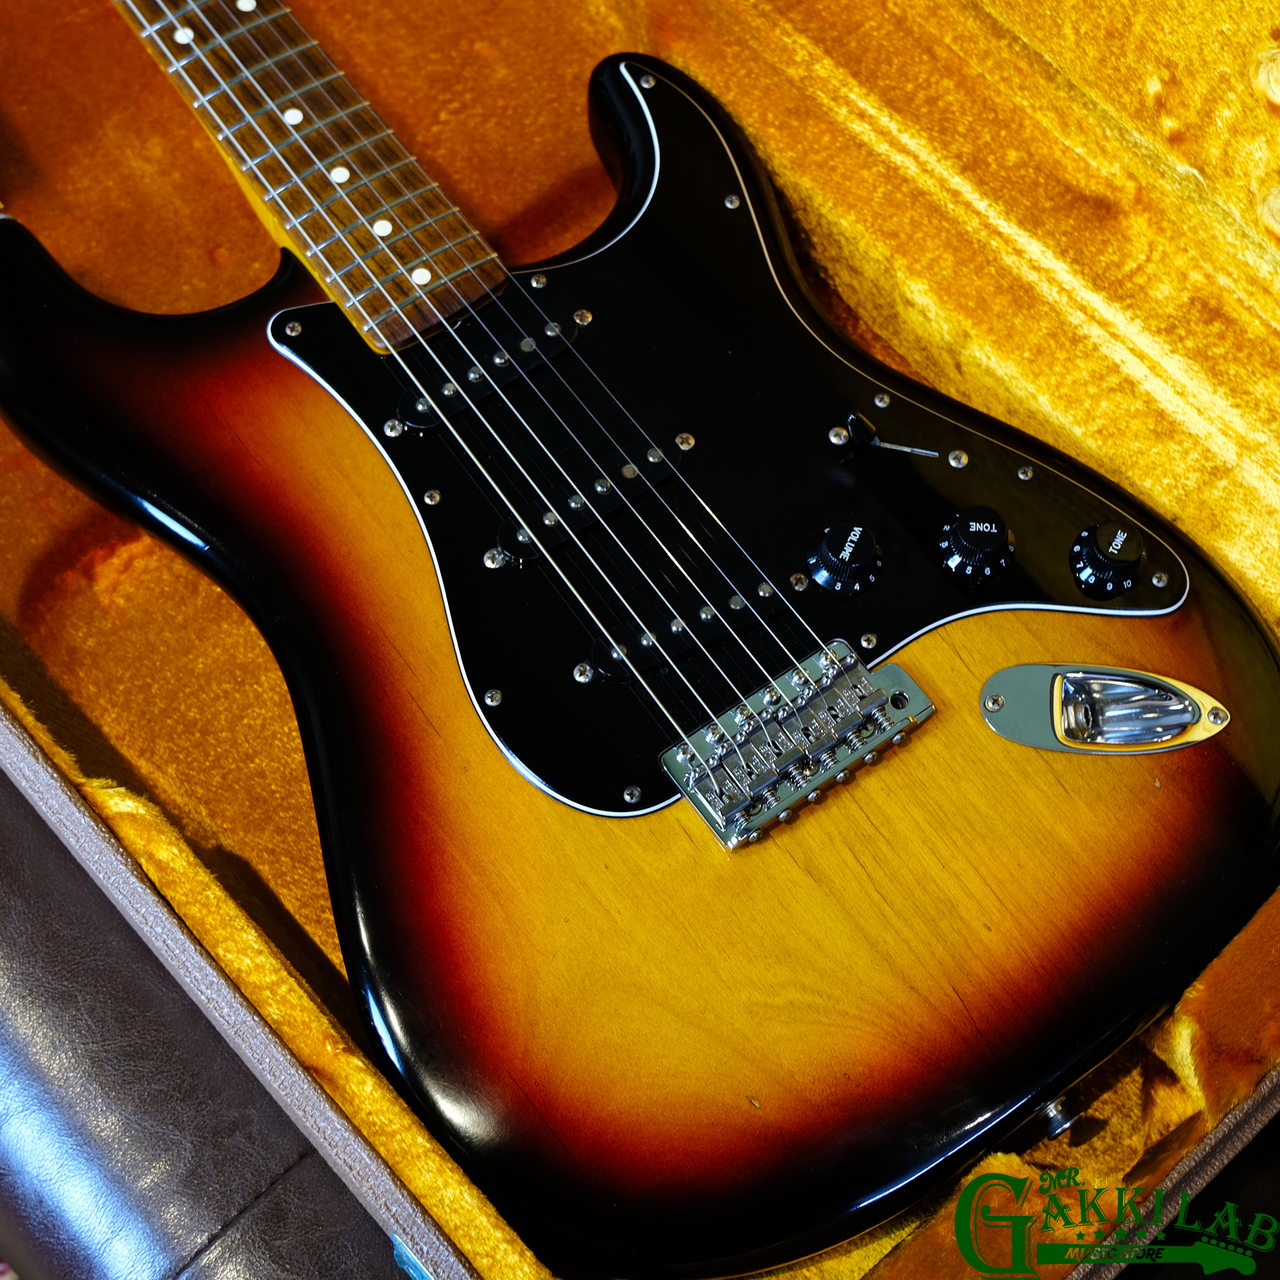 最新品特価中古 ◆ Fender American Vintage 62 Stratocaster 1991 ◆ フェンダー USA アメリカンビンテージ シリーズ ストラトキャスター ♪ フェンダー